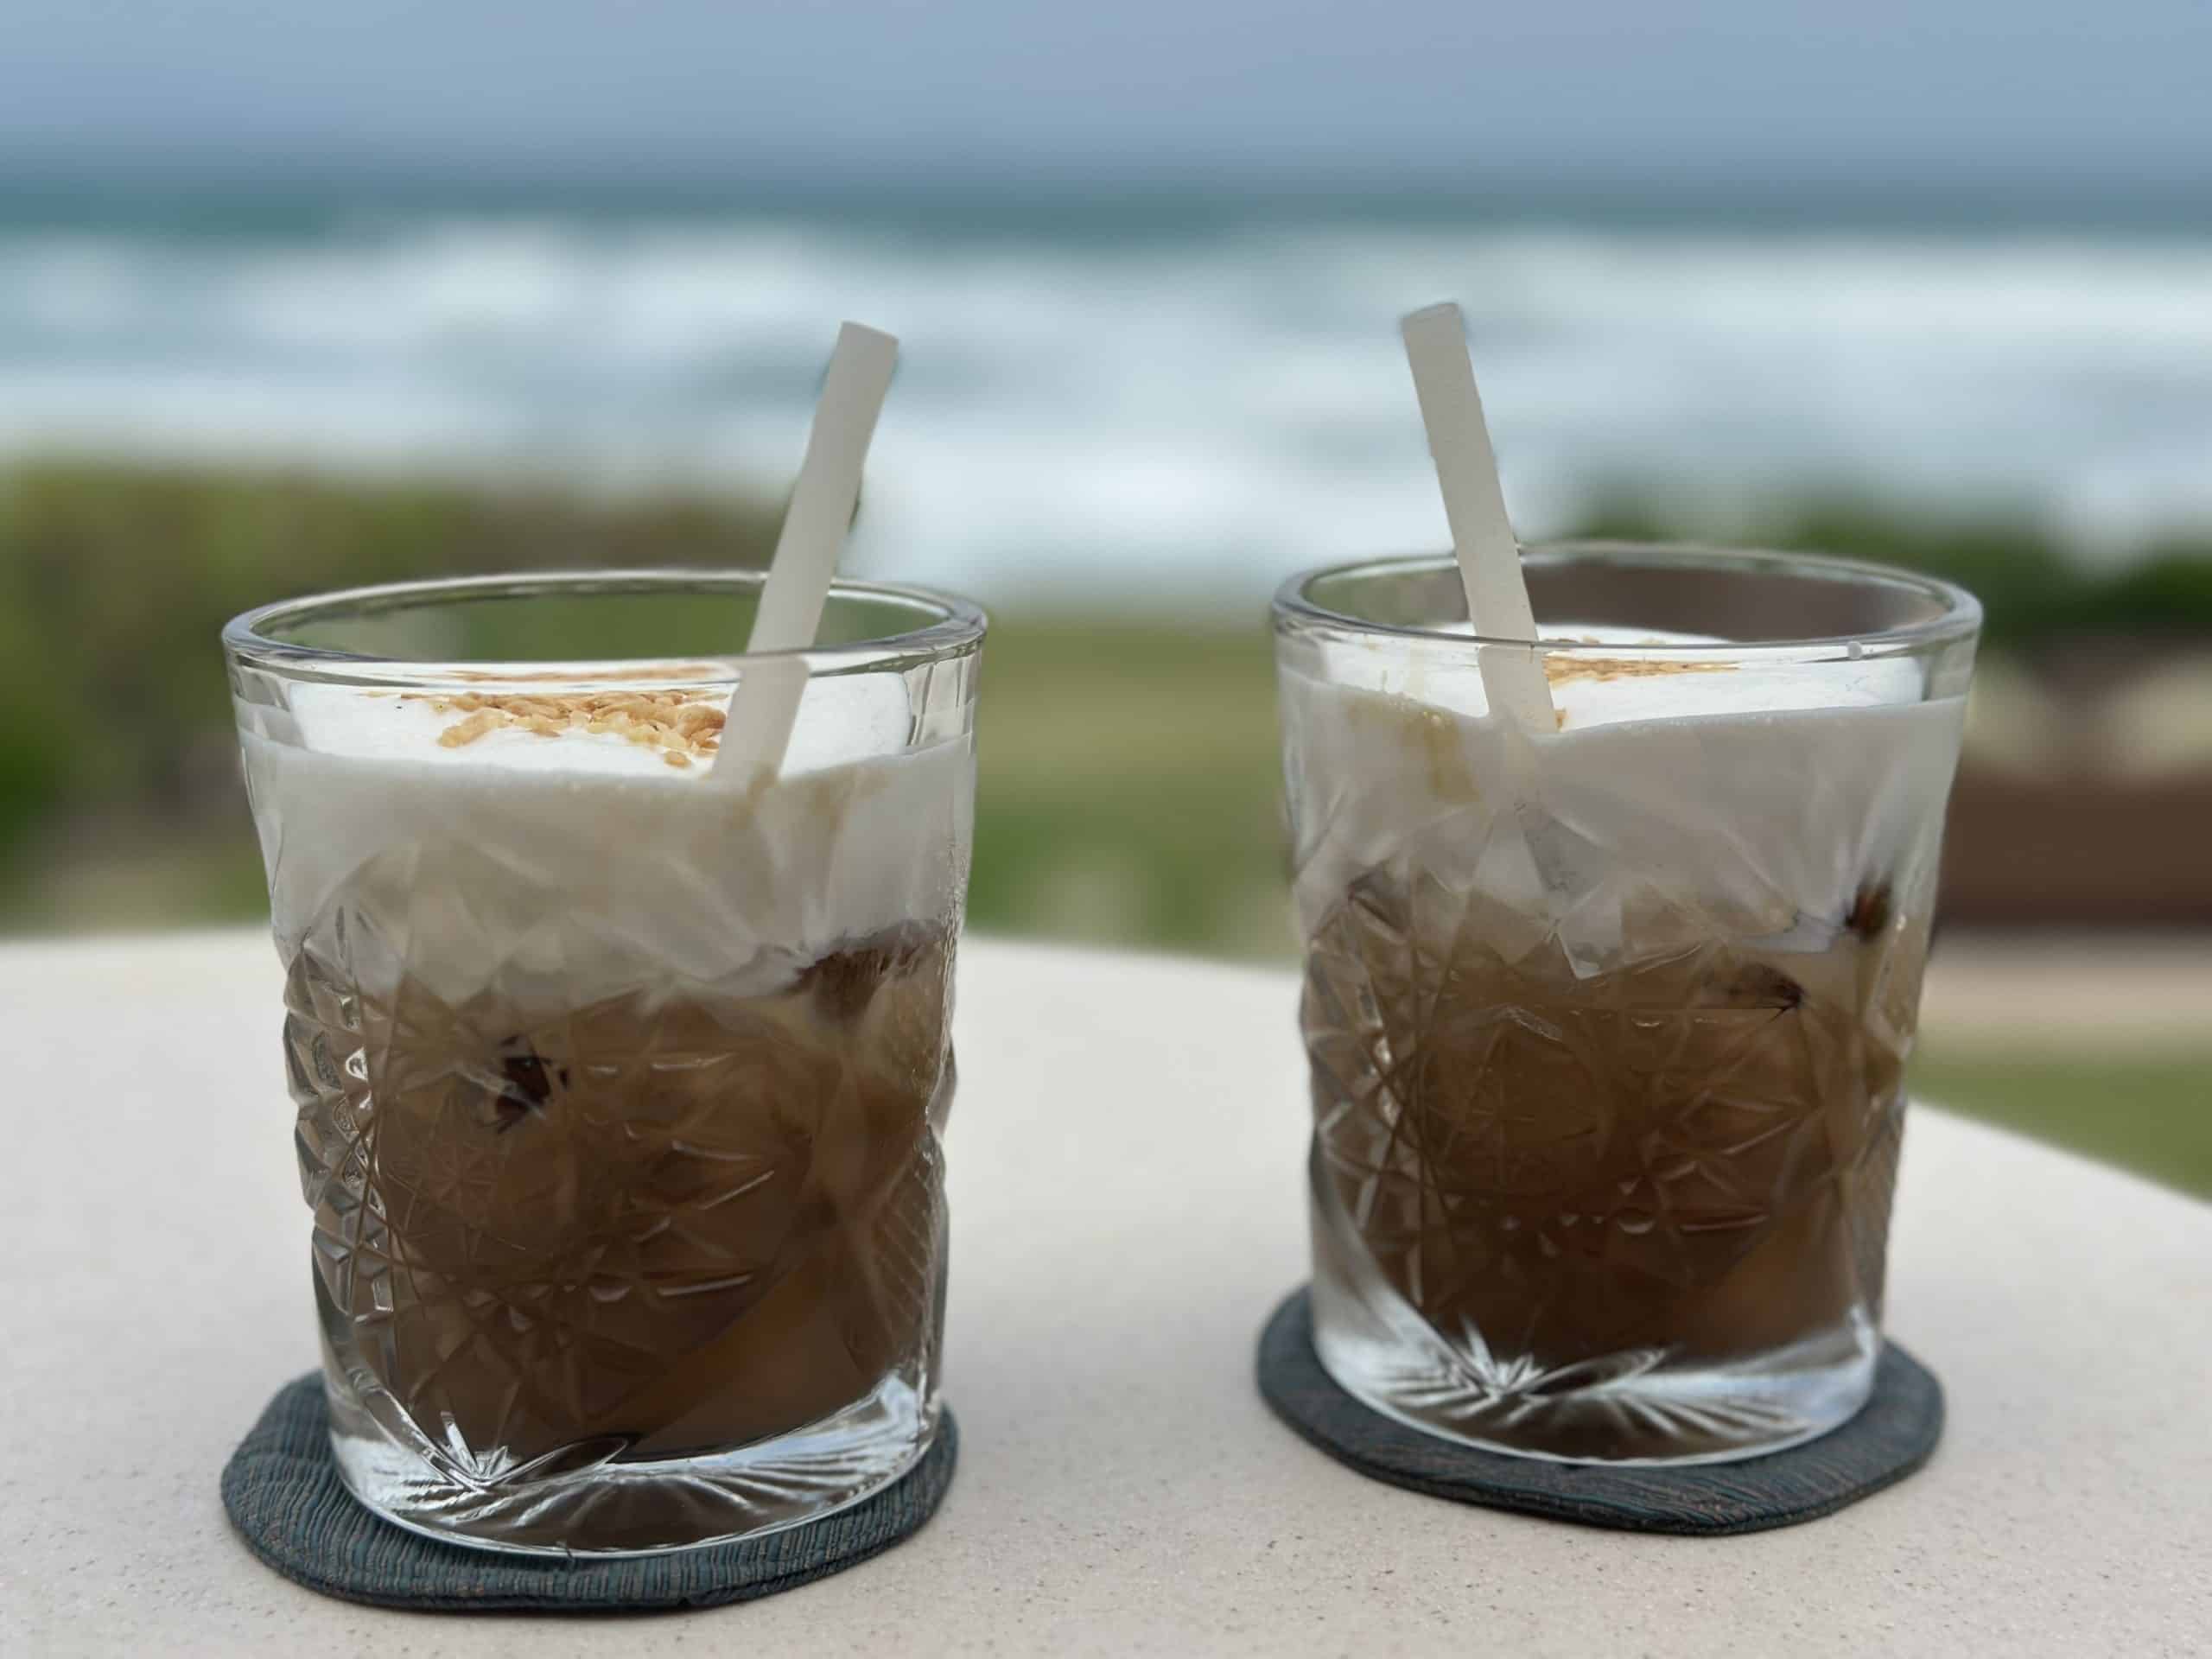 Zwei schaumige Eiskaffeegetränke in strukturierten Glasbechern mit weißen Strohhalmen stehen auf einem Tisch mit grauen Untersetzern. Im Hintergrund ist ein verschwommener Blick auf rollende Meereswellen unter einem bewölkten Himmel zu sehen, der zu einer entspannten Küstenatmosphäre beiträgt.